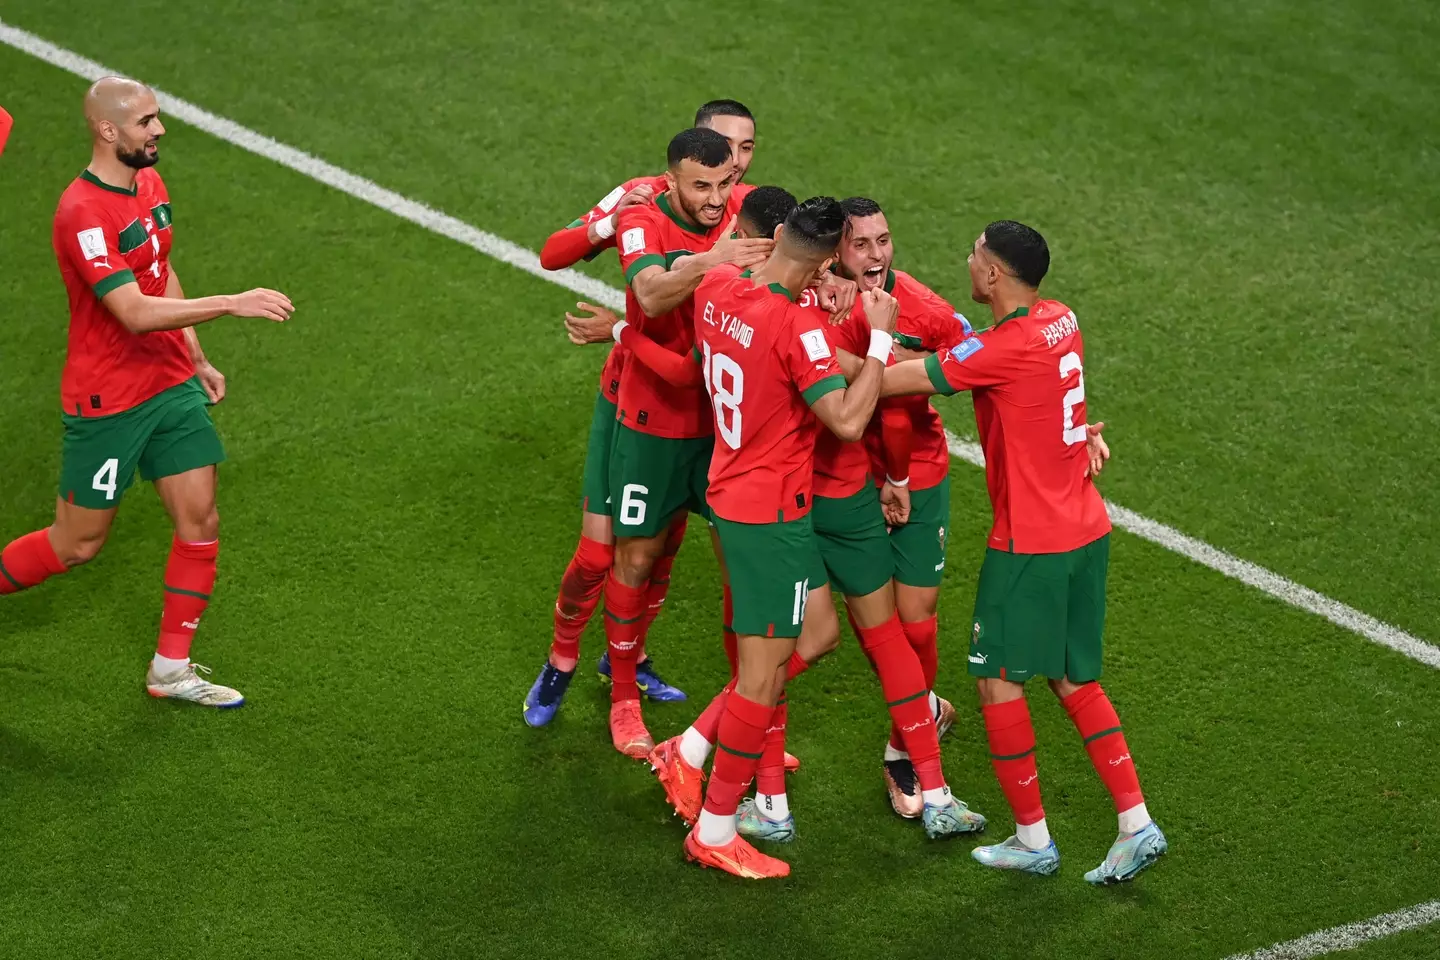 En-Nesyri celebrates with his teammates. (Image